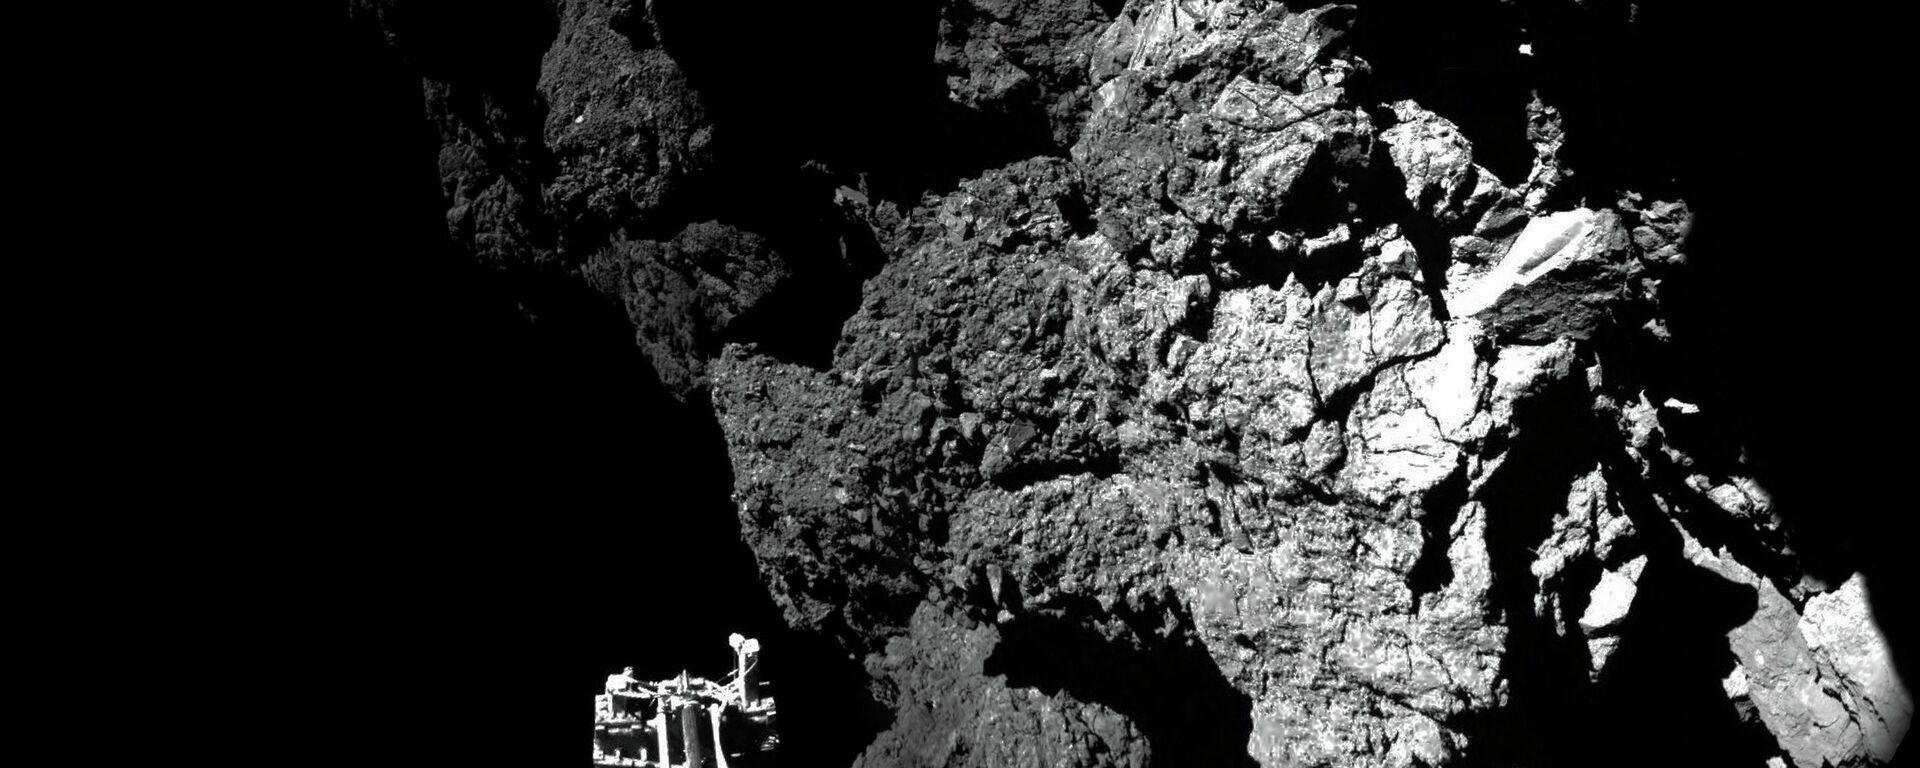 Фотография кометы Чурюмова-Герасименко, сделанная космическим аппаратом Розетта (Rosetta). 12 ноября 2014 - Sputnik Таджикистан, 1920, 14.11.2014